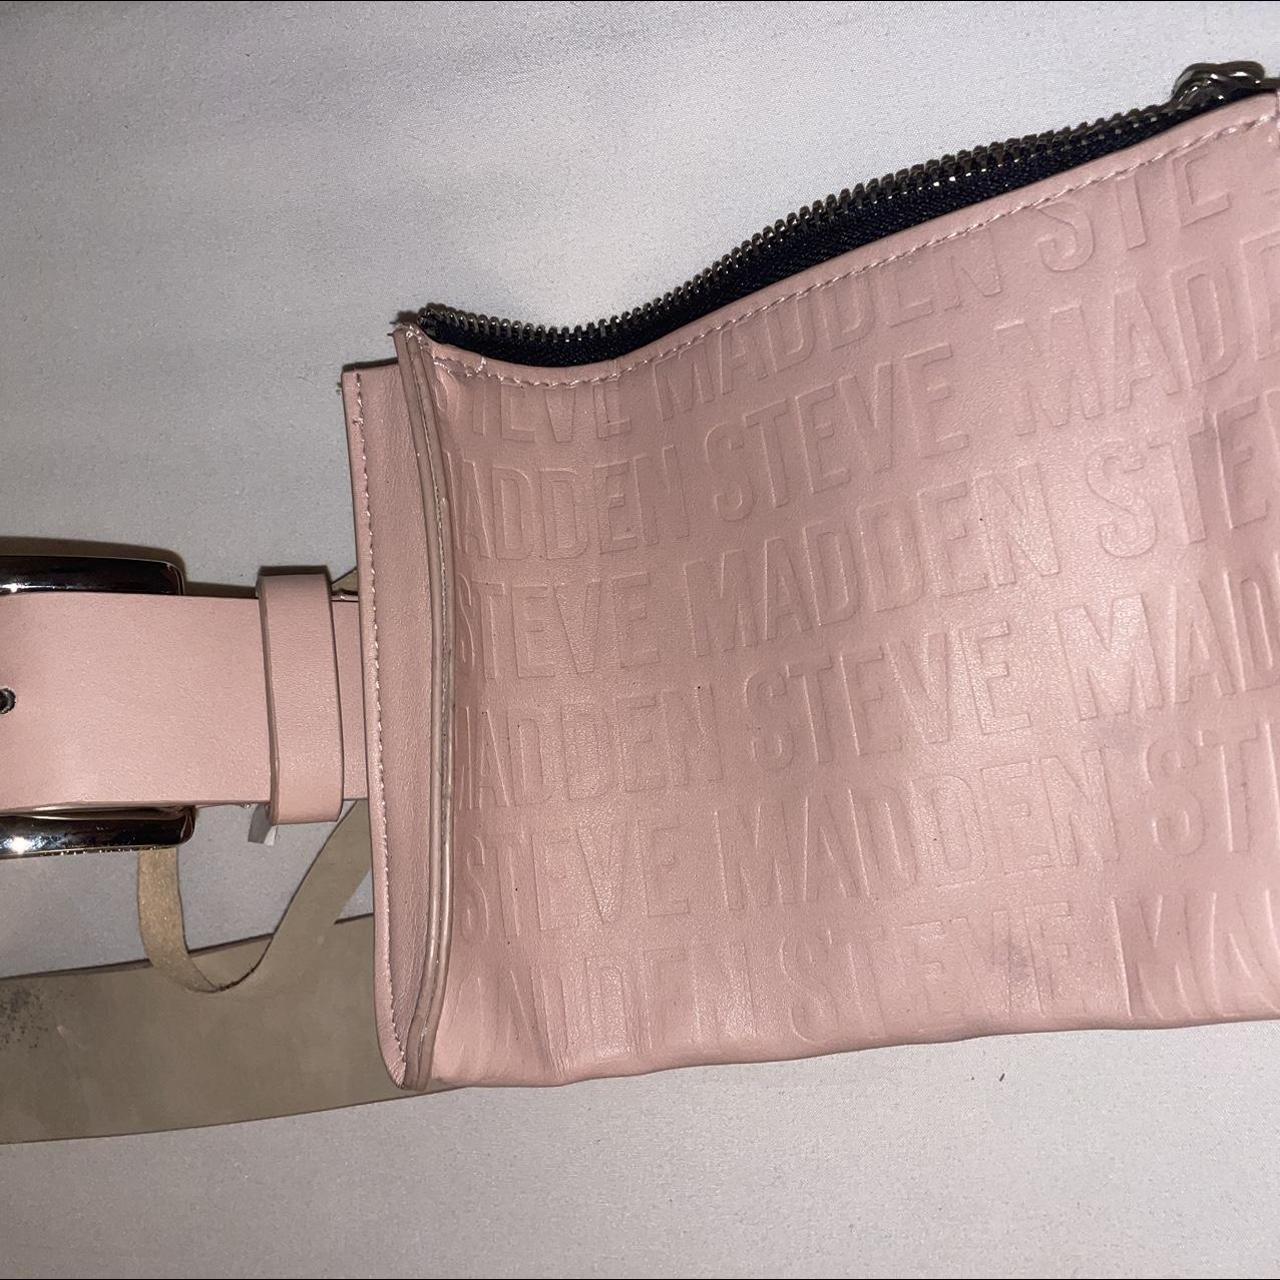 Leather Festival Utility Belt -Hip Bag -Pocket belt with